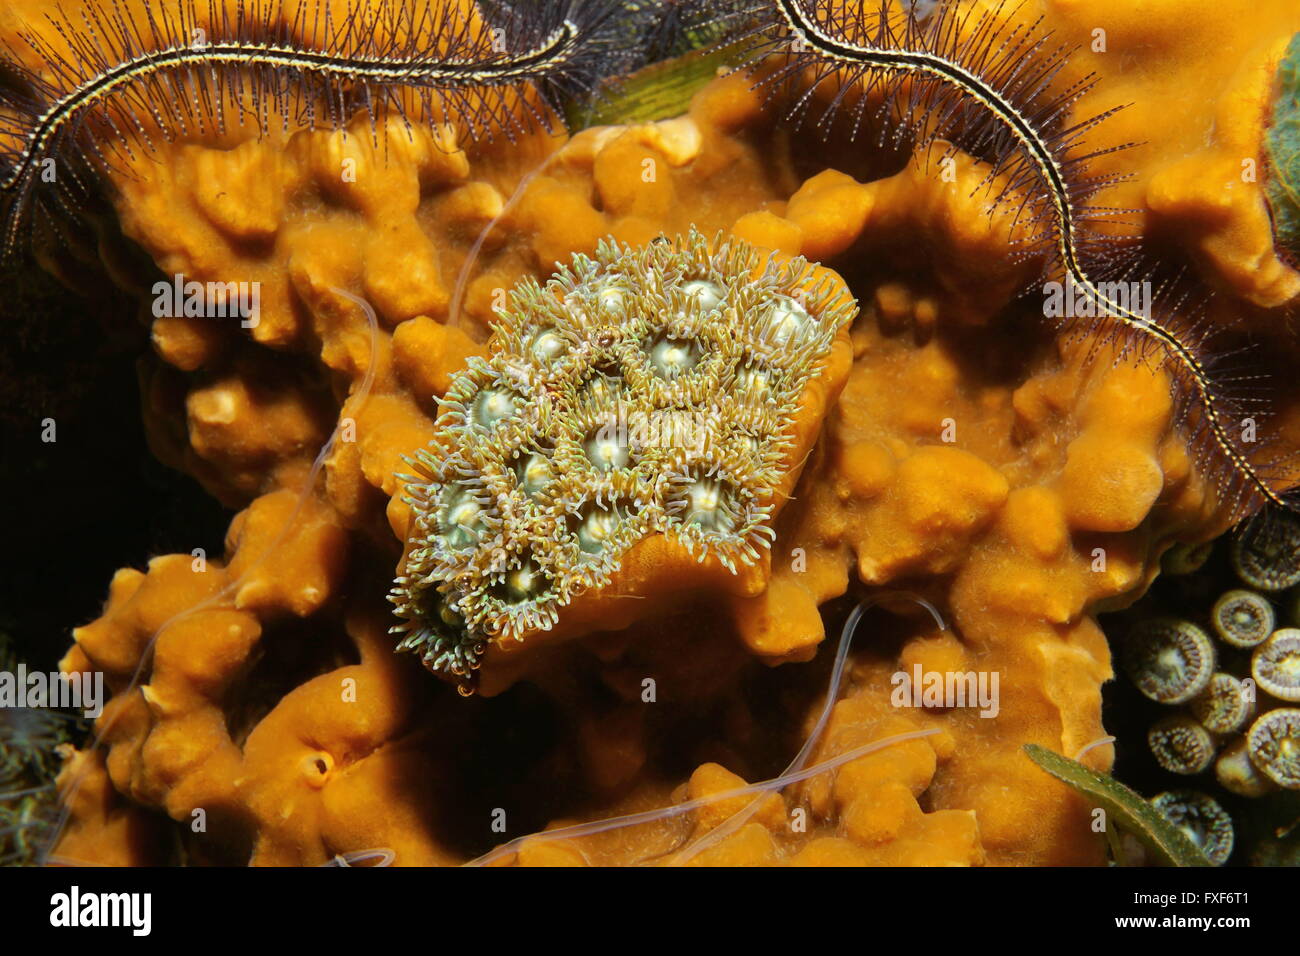 Unterwasserwelt, Kolonie von Mat Krustenanemonen umgeben von Cliona Meerschwamm, Karibik Stockfoto